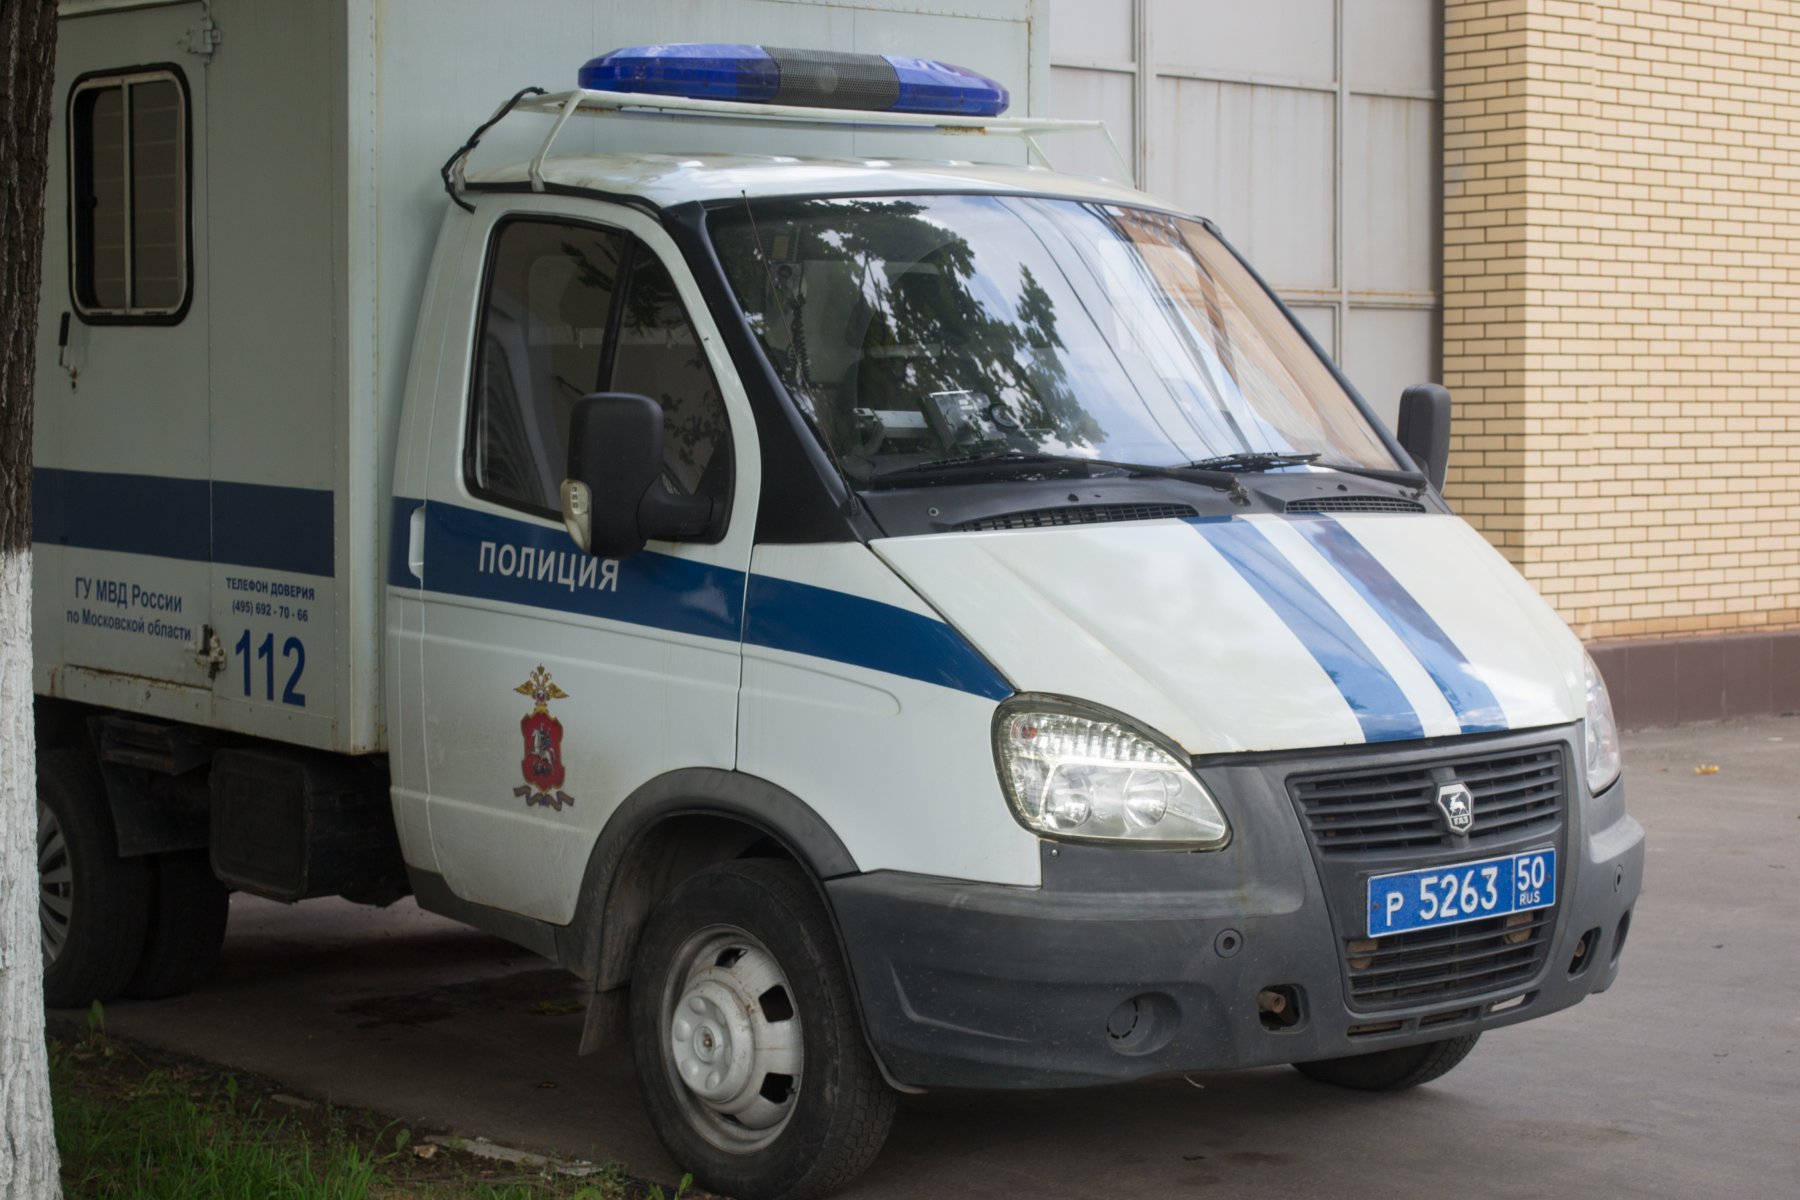 В Дмитрове за кражу автомобиля задержали трех мужчин